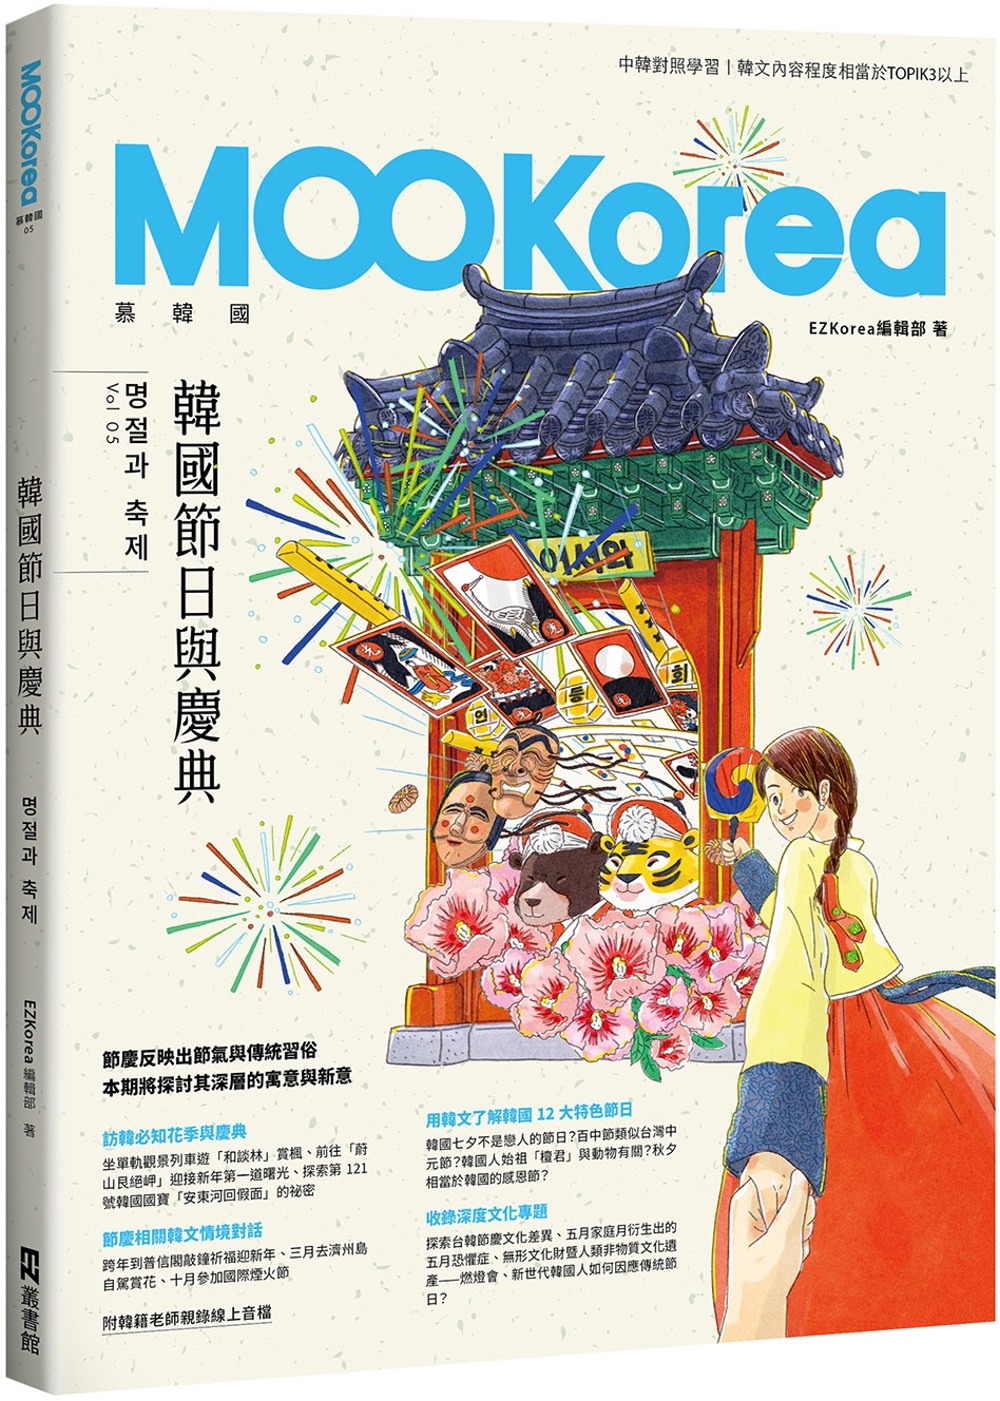 韓國節日與慶典：MOOKorea慕韓國 第5期 명절과 축제...